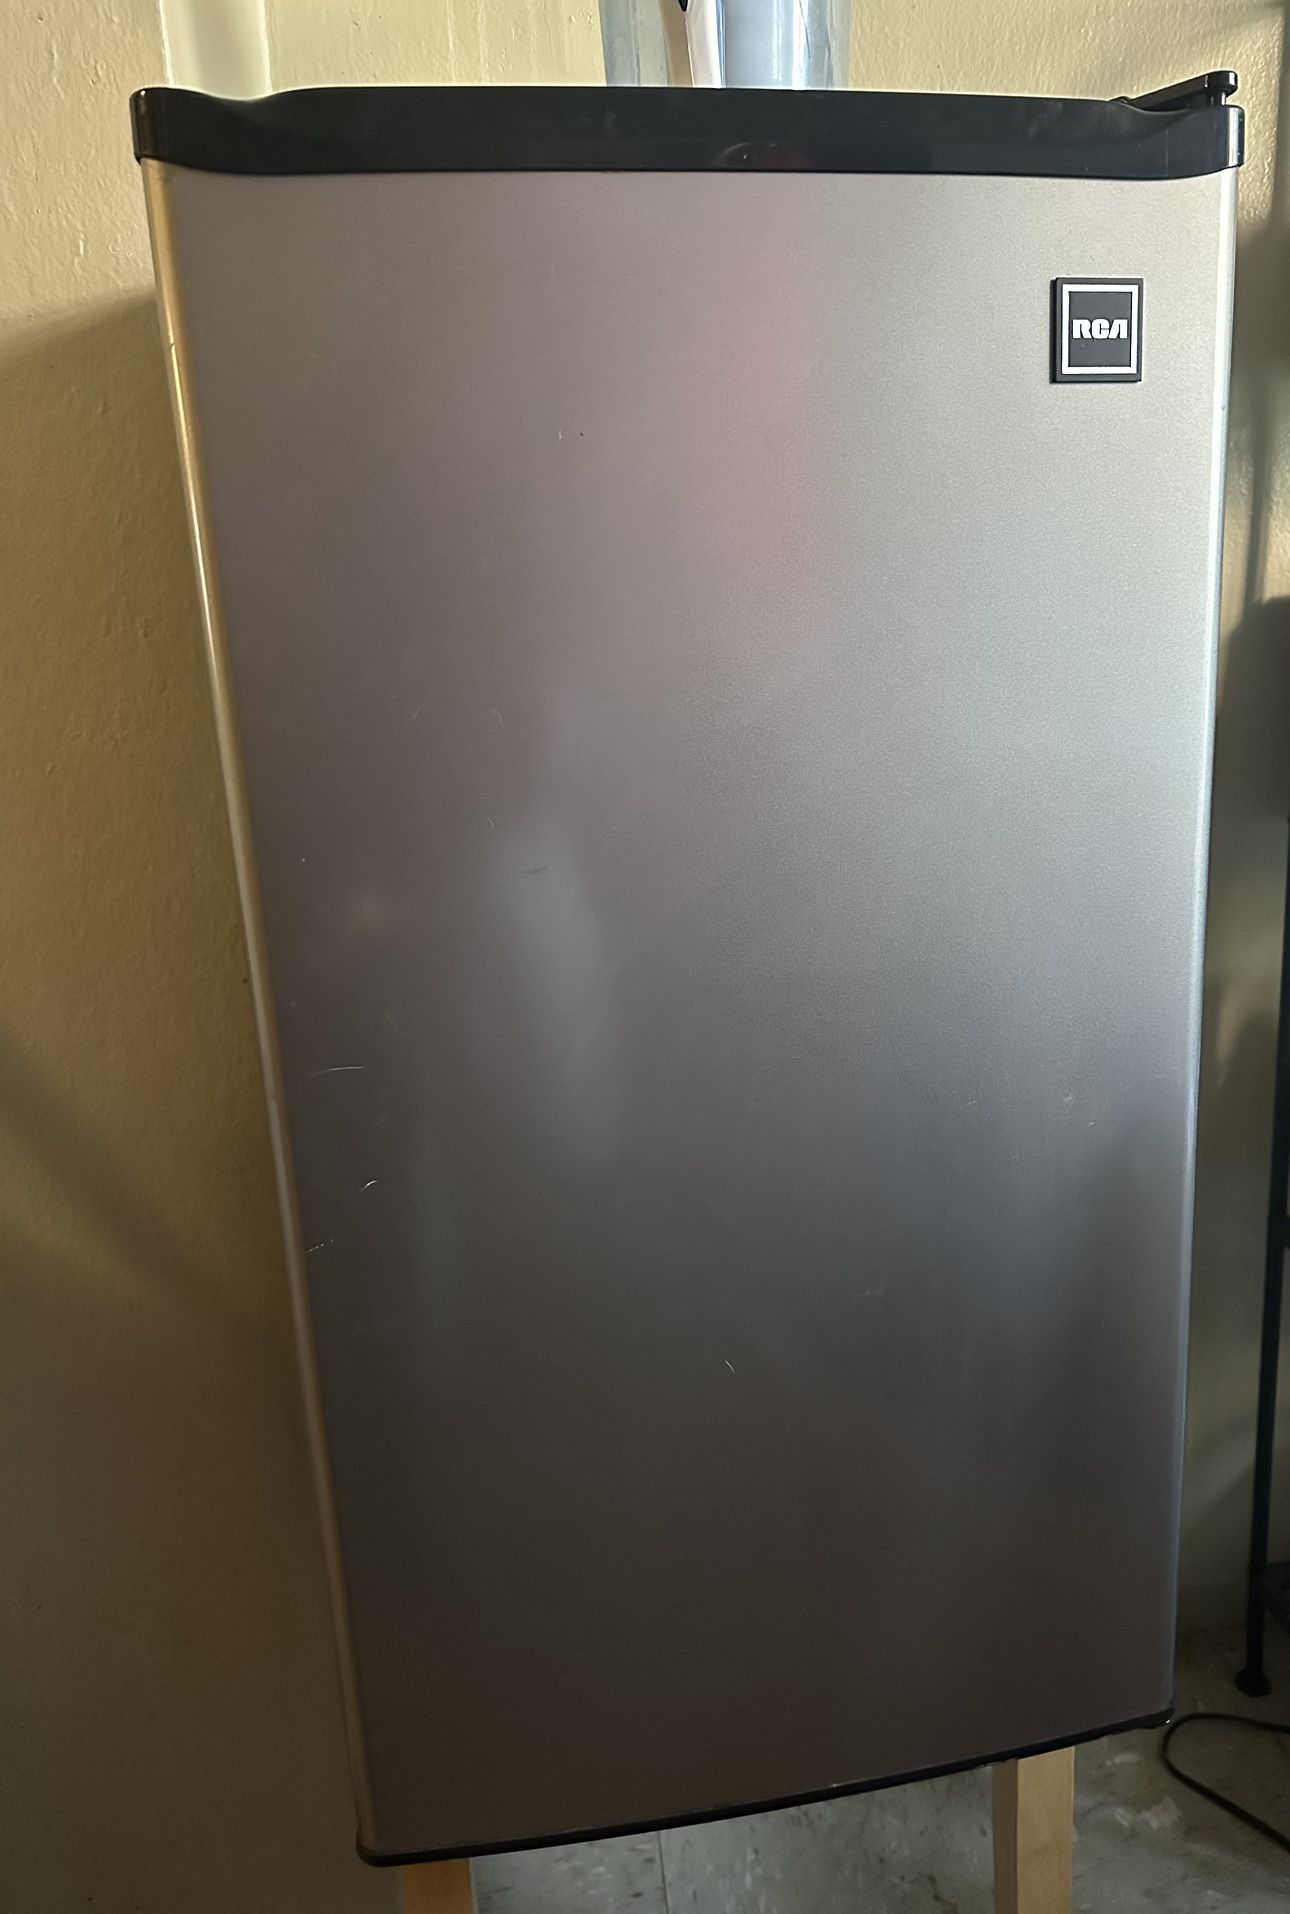 RCA Refrigerator 